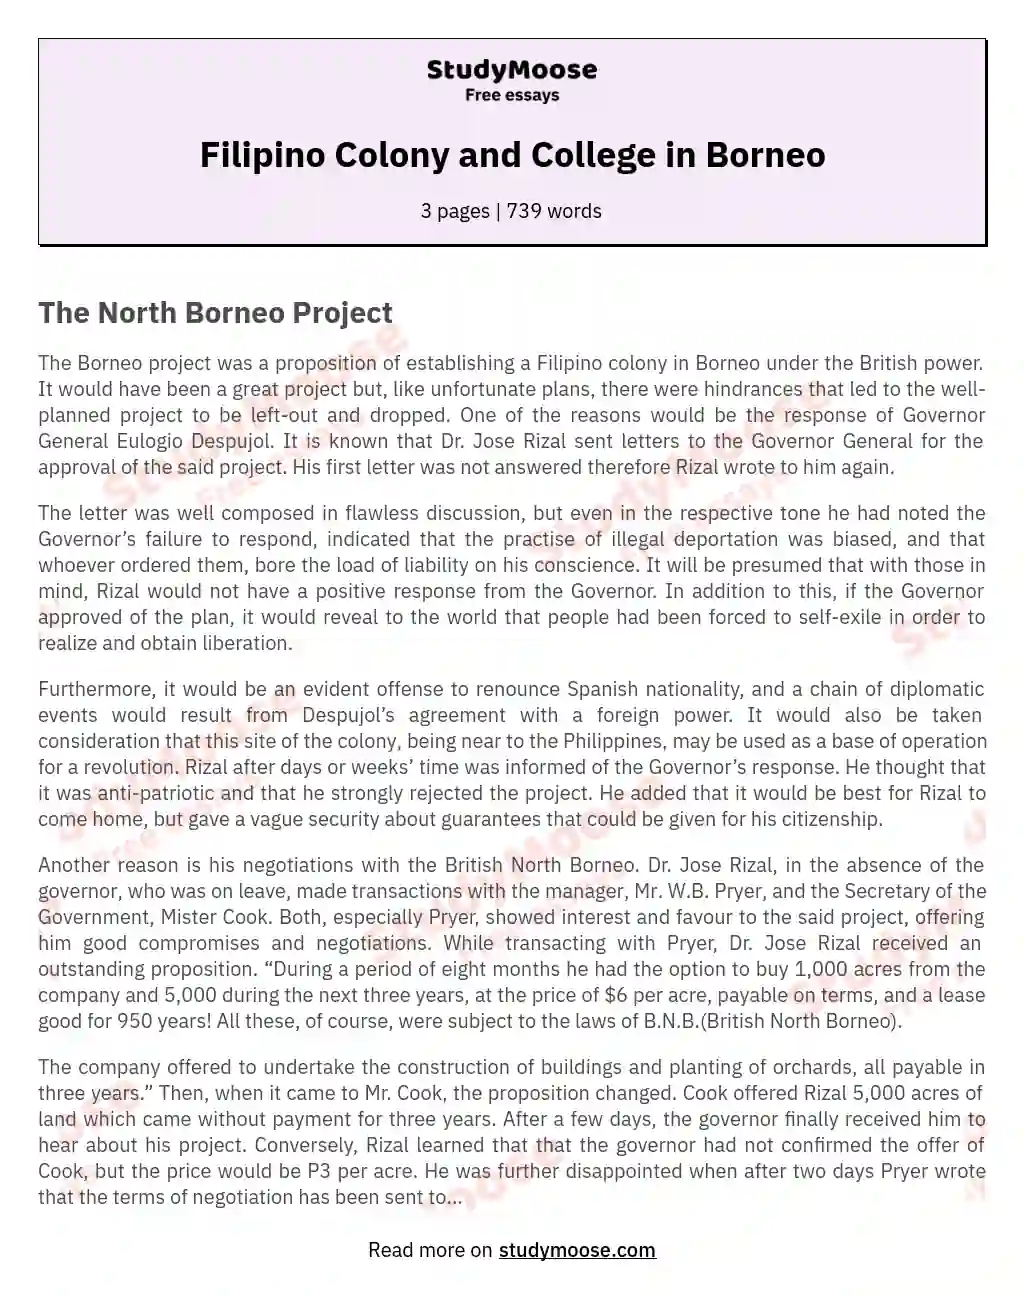 Filipino Colony and College in Borneo essay